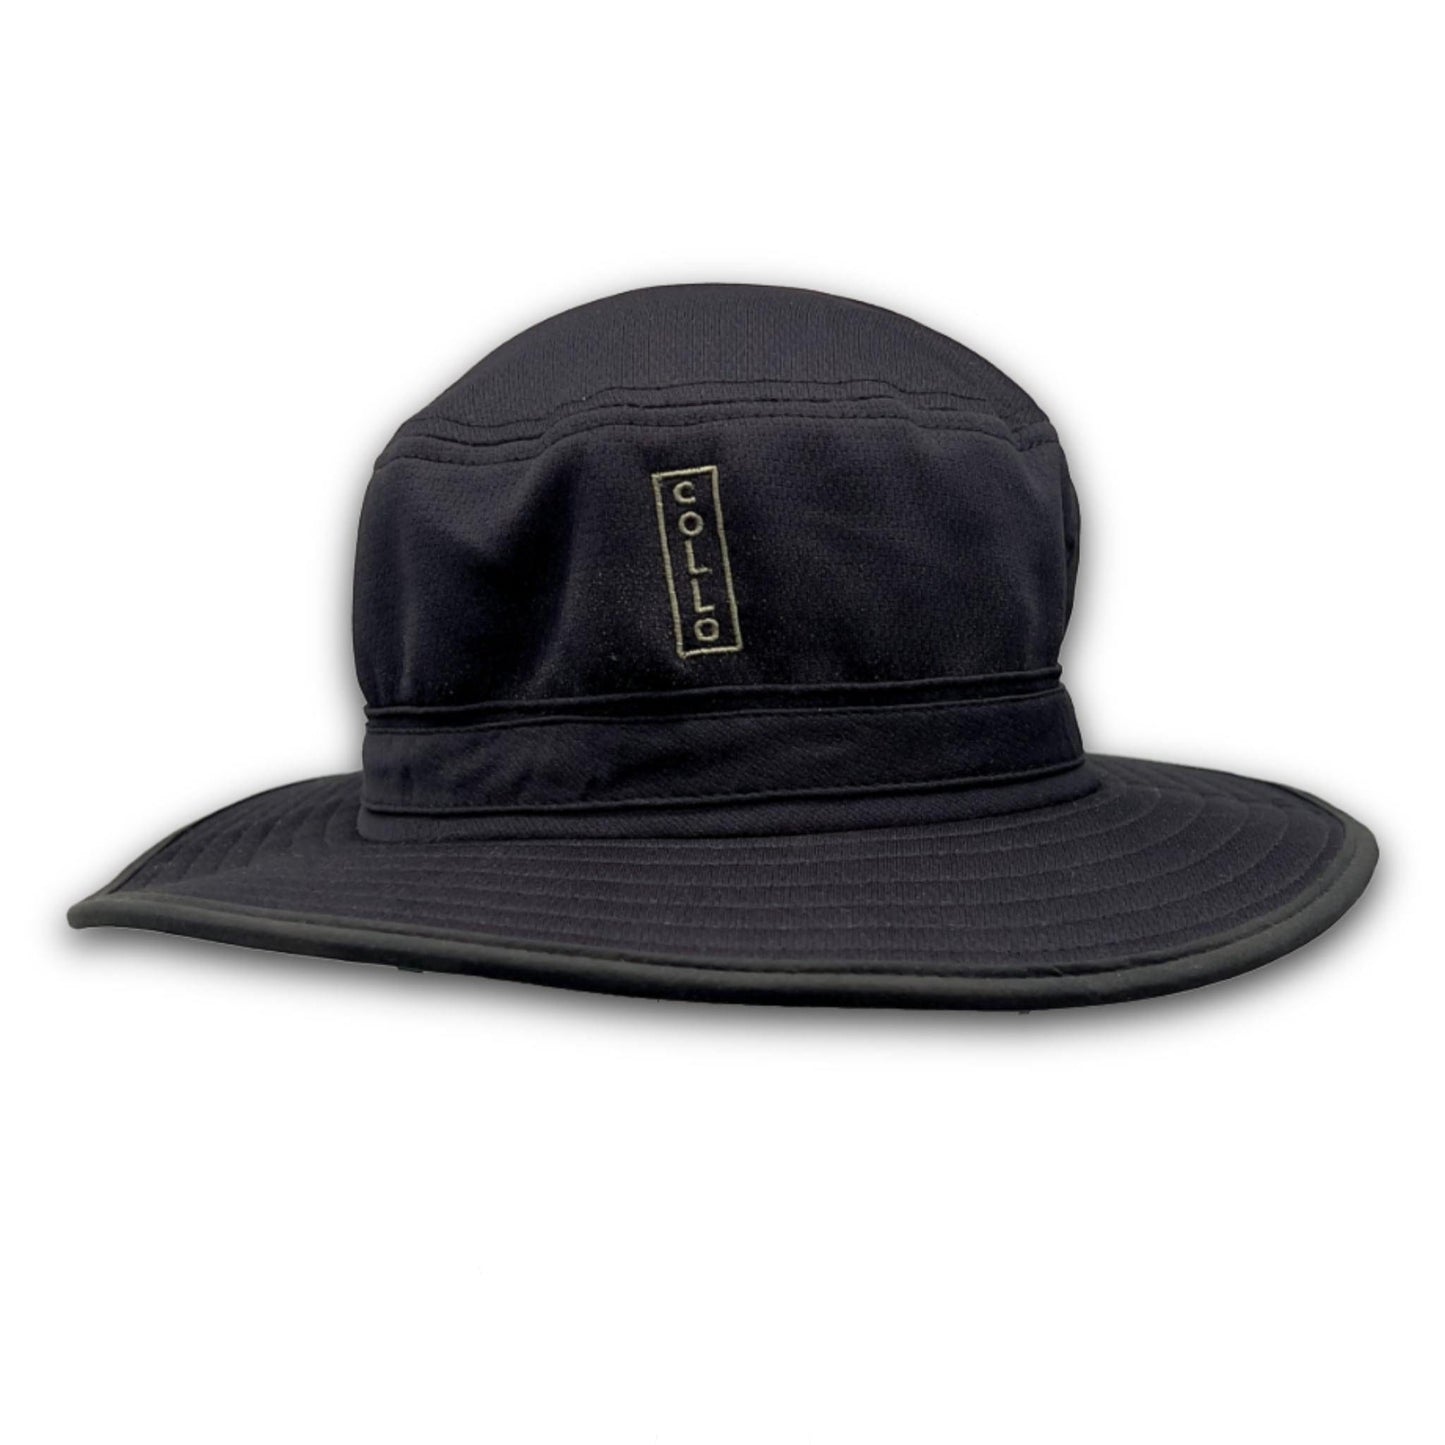 coLLo AppareL Hats Black / L/XL TUG